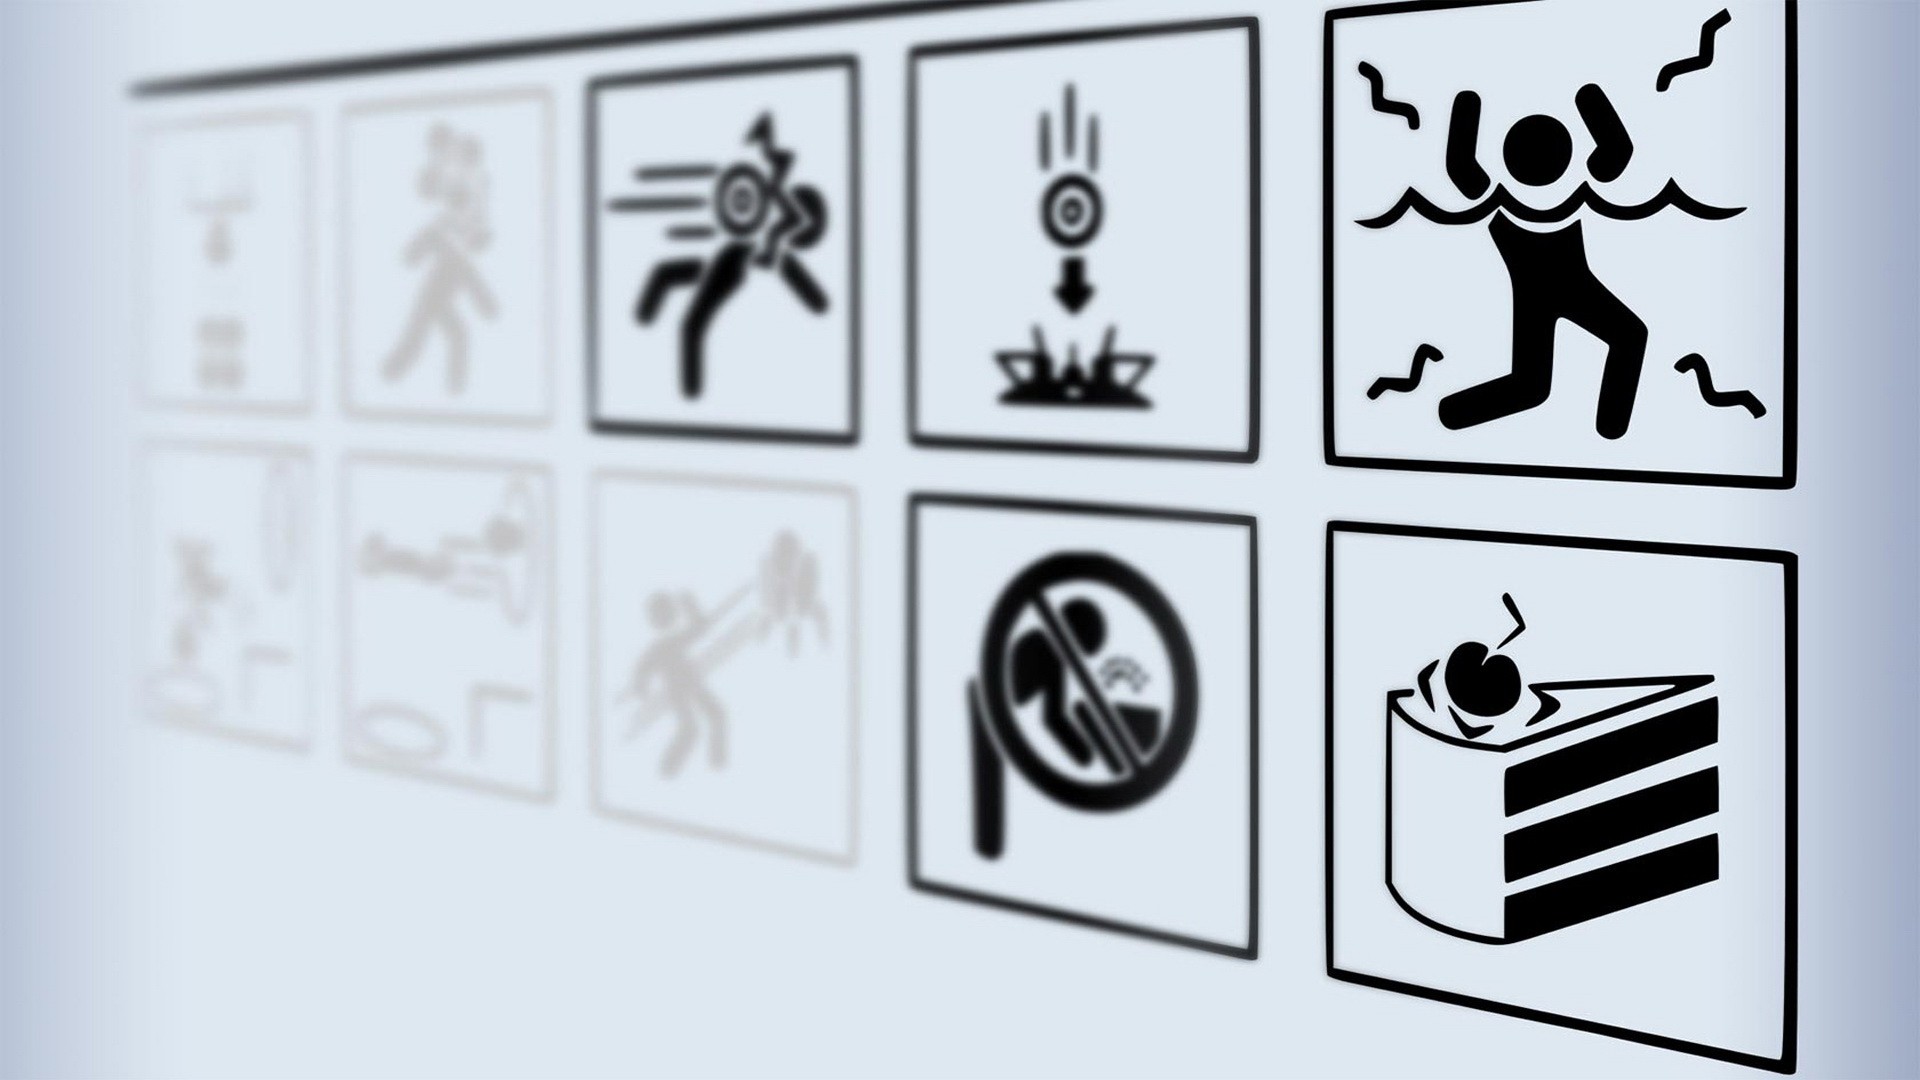 Portal, Portal 2, Warning Signs Wallpaper